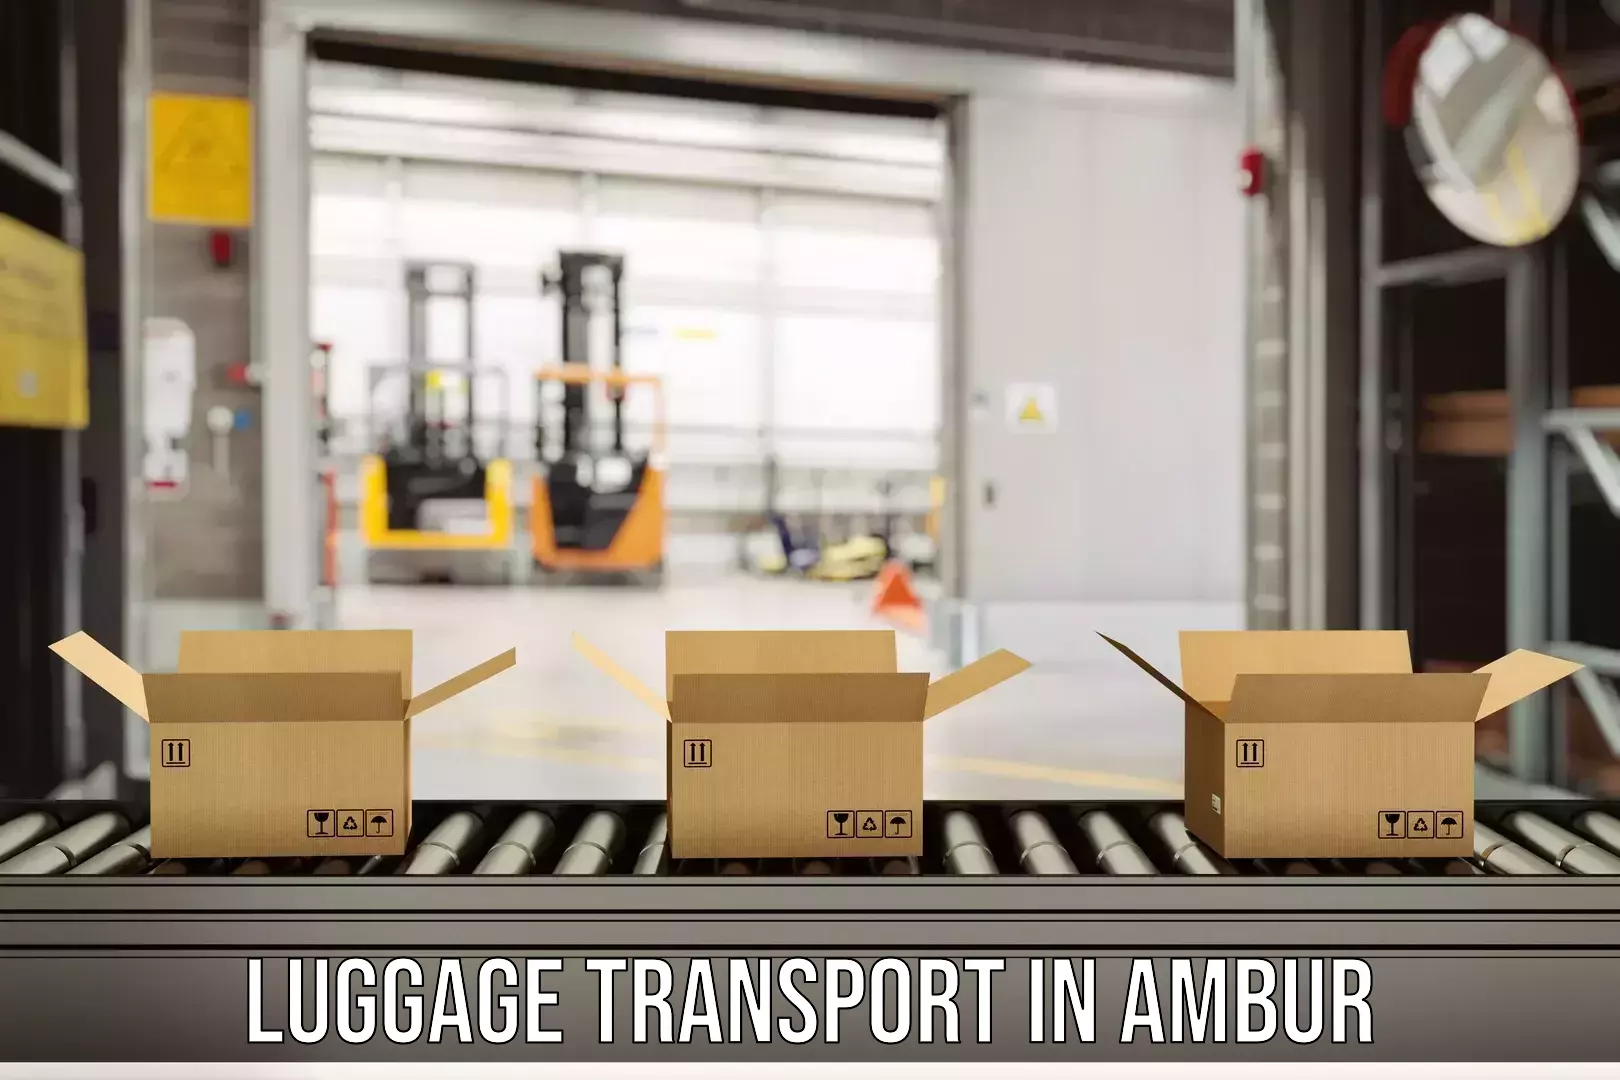 Luggage transport schedule in Ambur